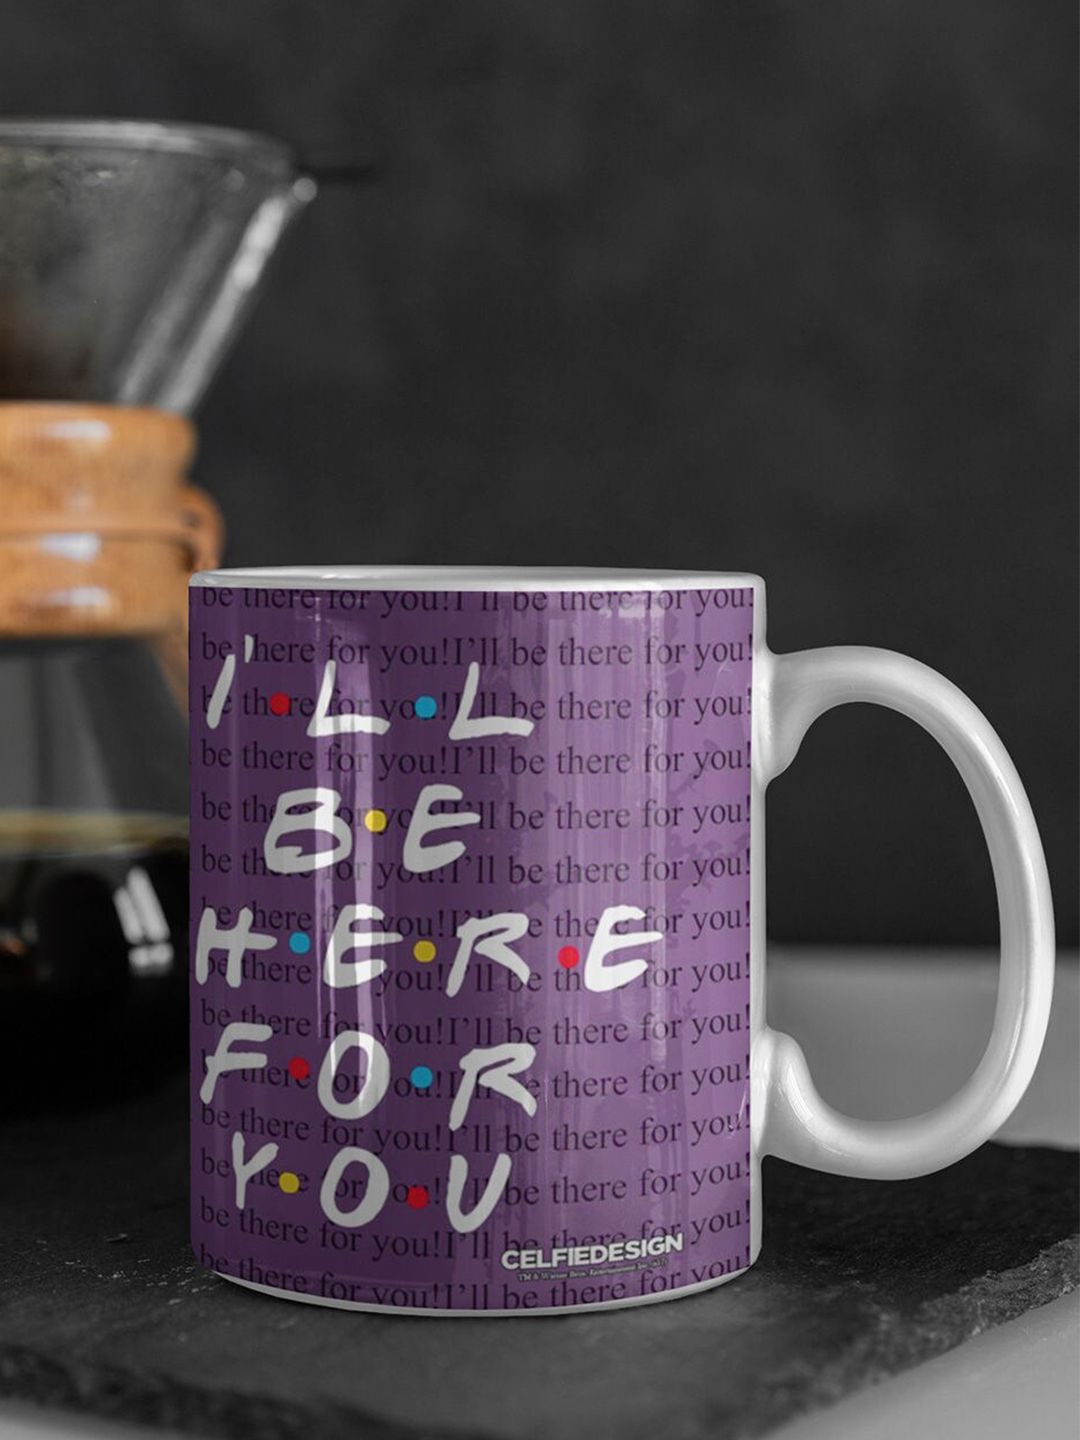 macmerise Purple & White Printed Ceramic Glossy Mug Price in India